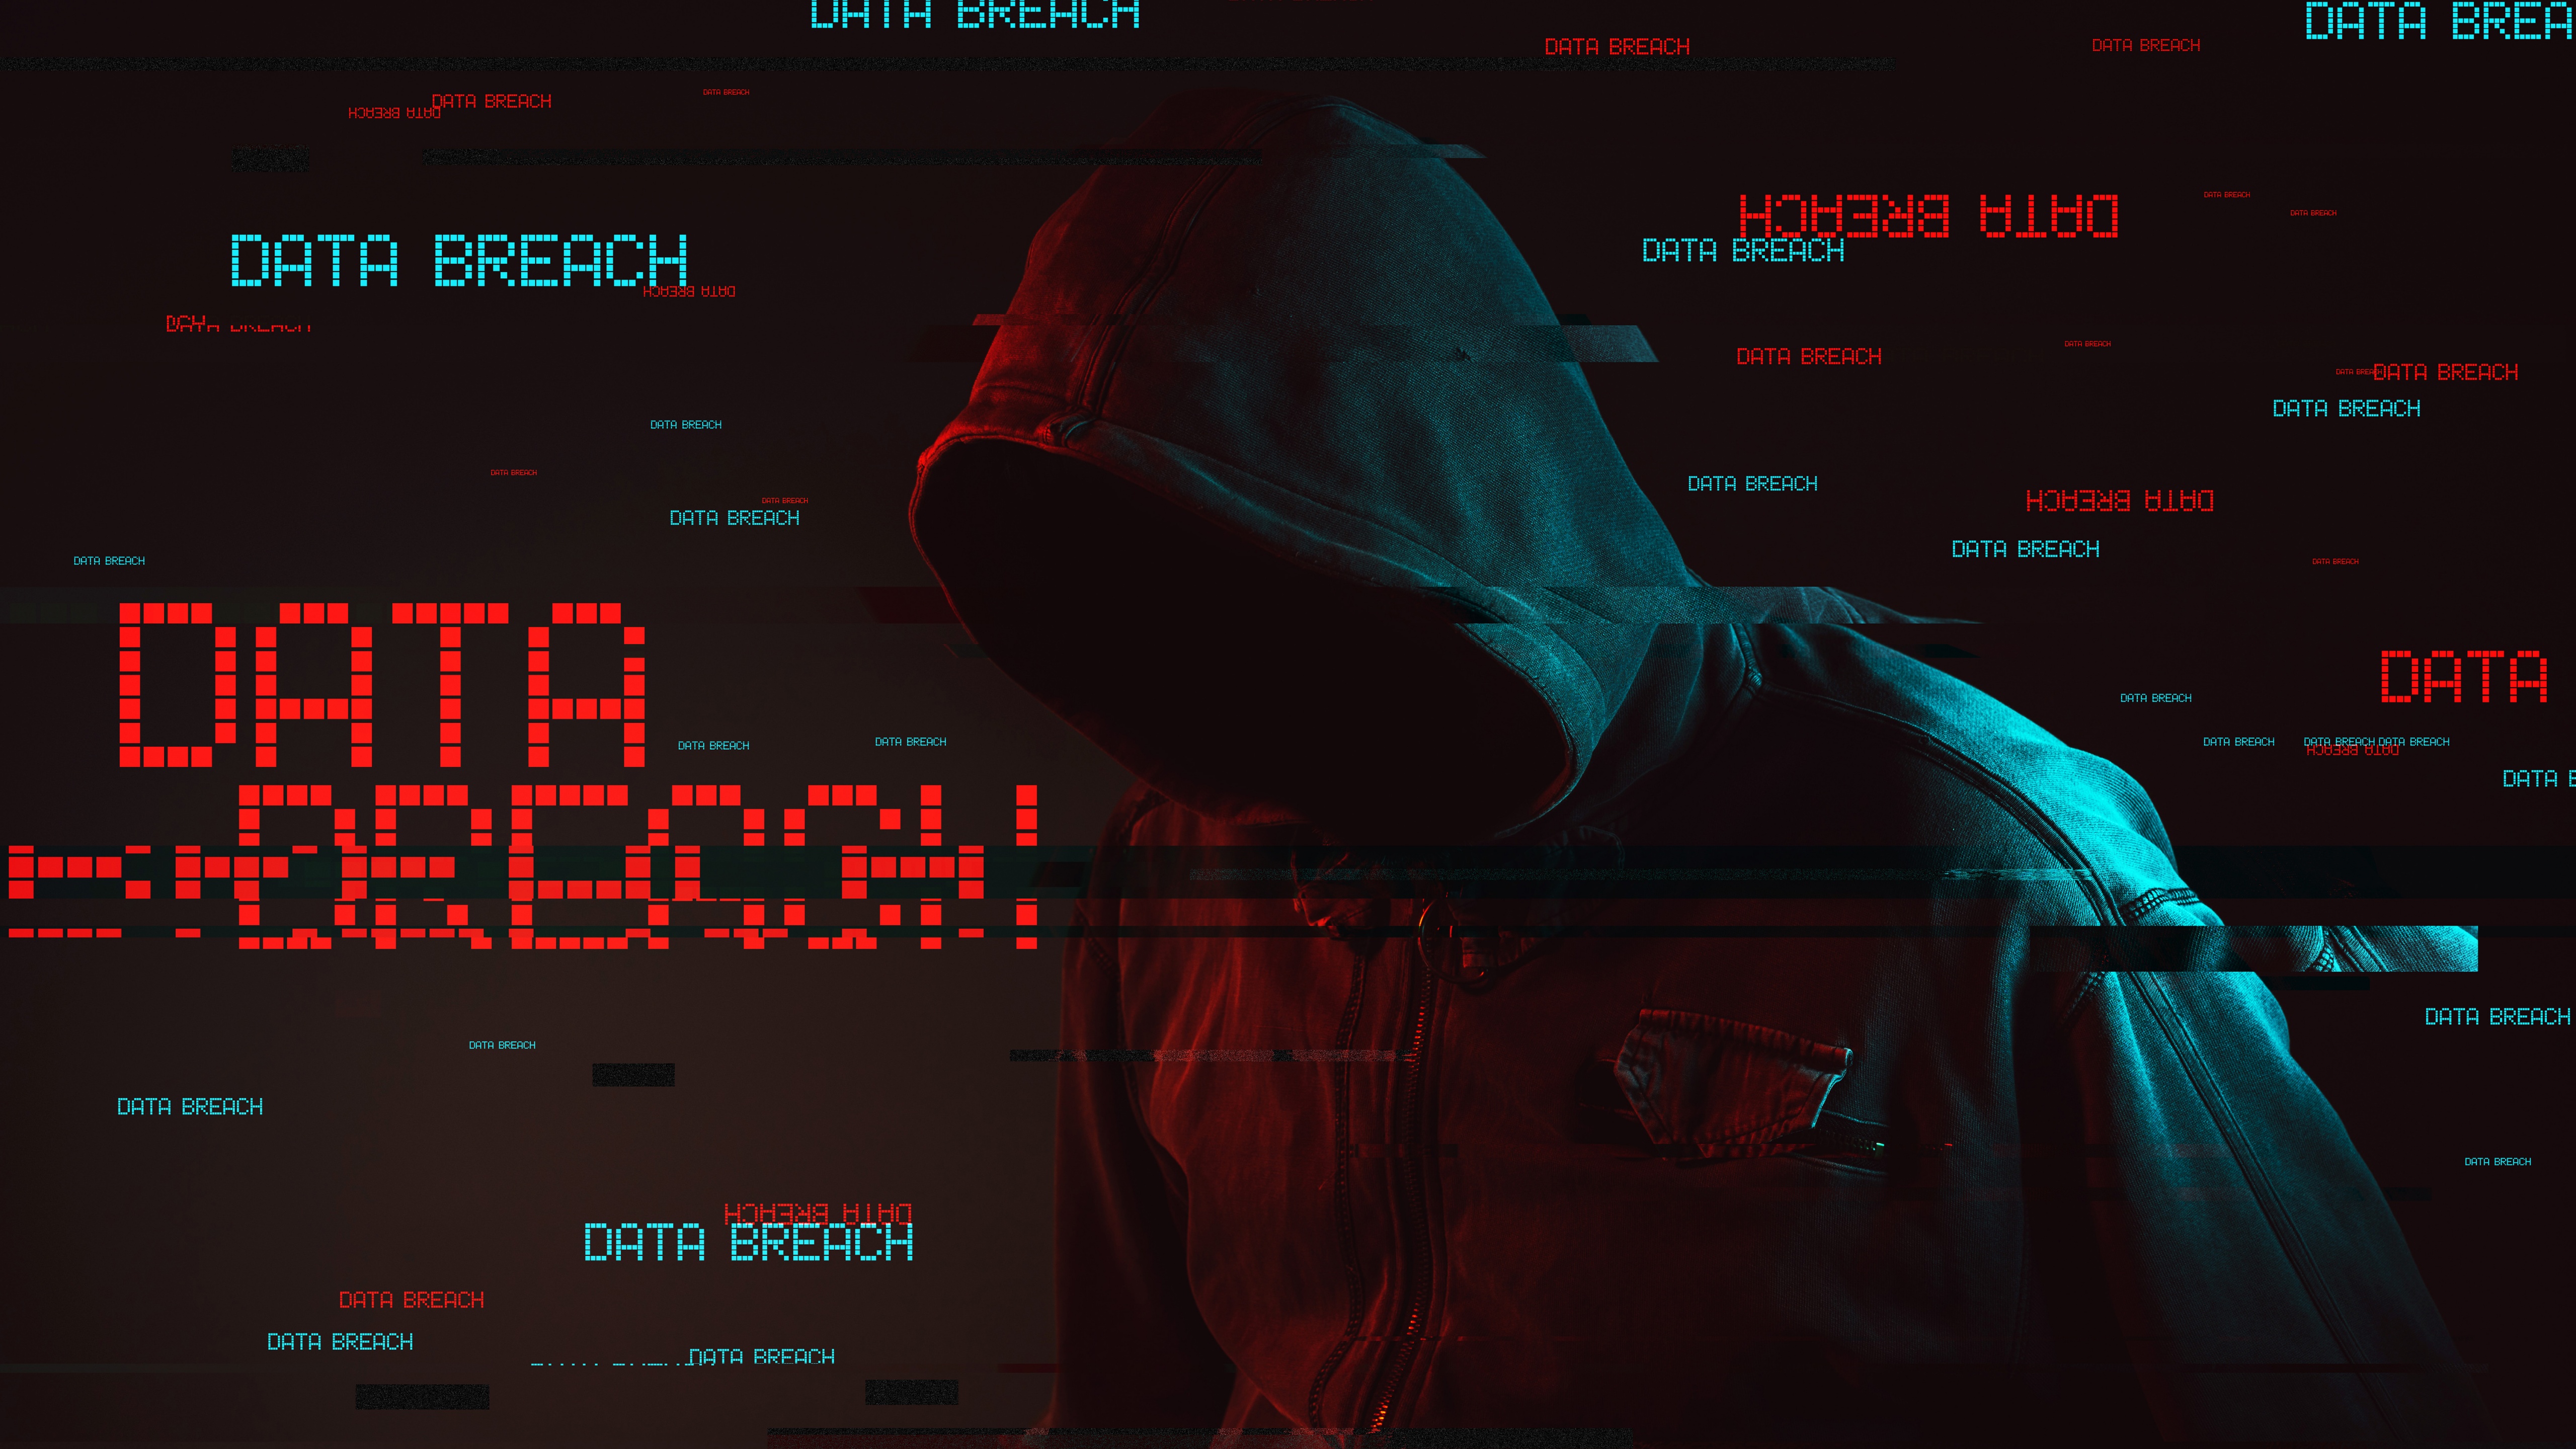 Anonymous Wallpaper 4K, Hacker, Data breach, 5K